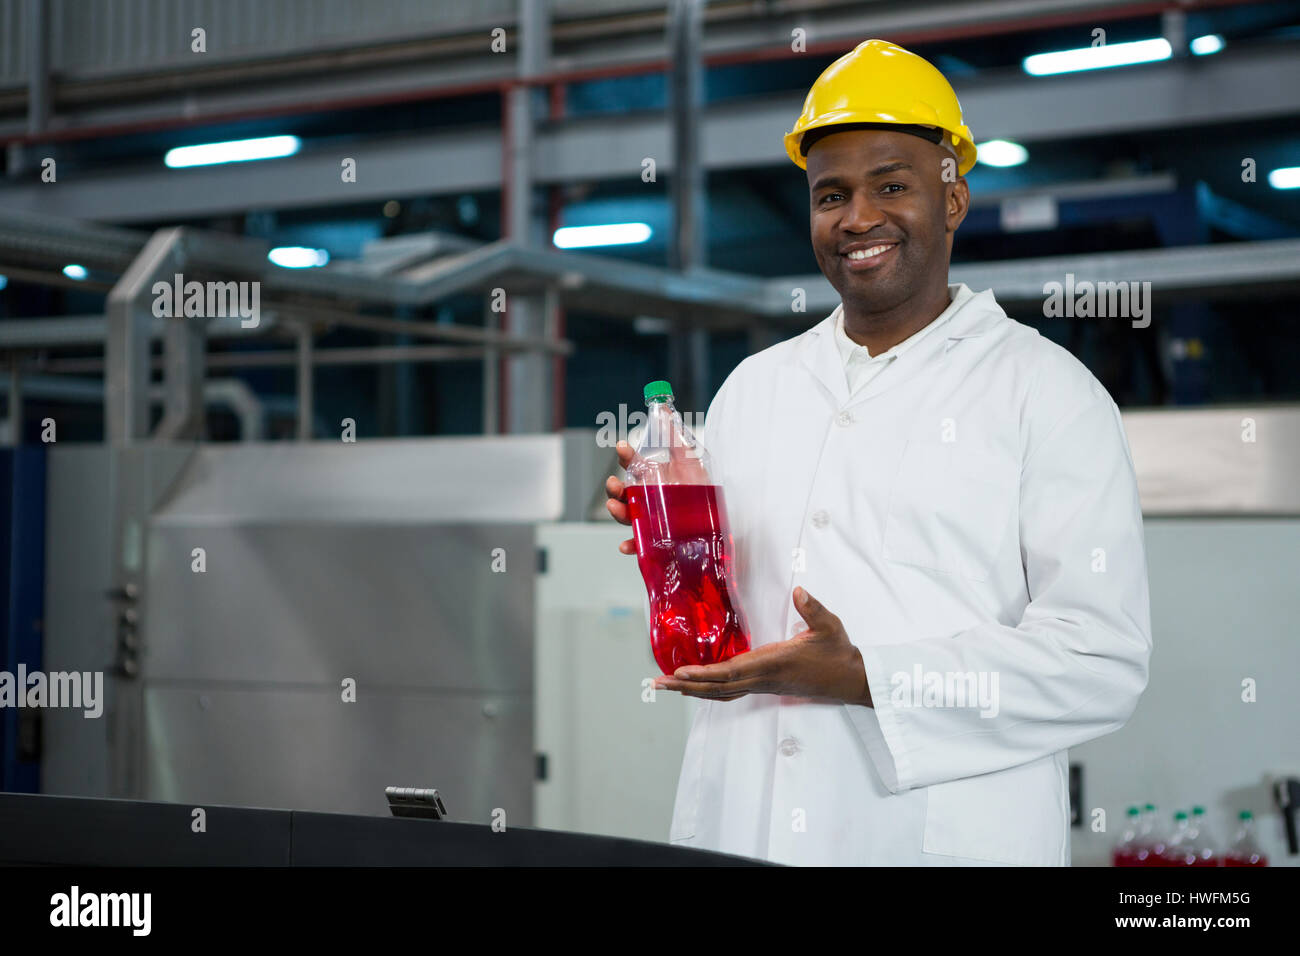 Portrait of male worker showing juice bottle in factory Stock Photo